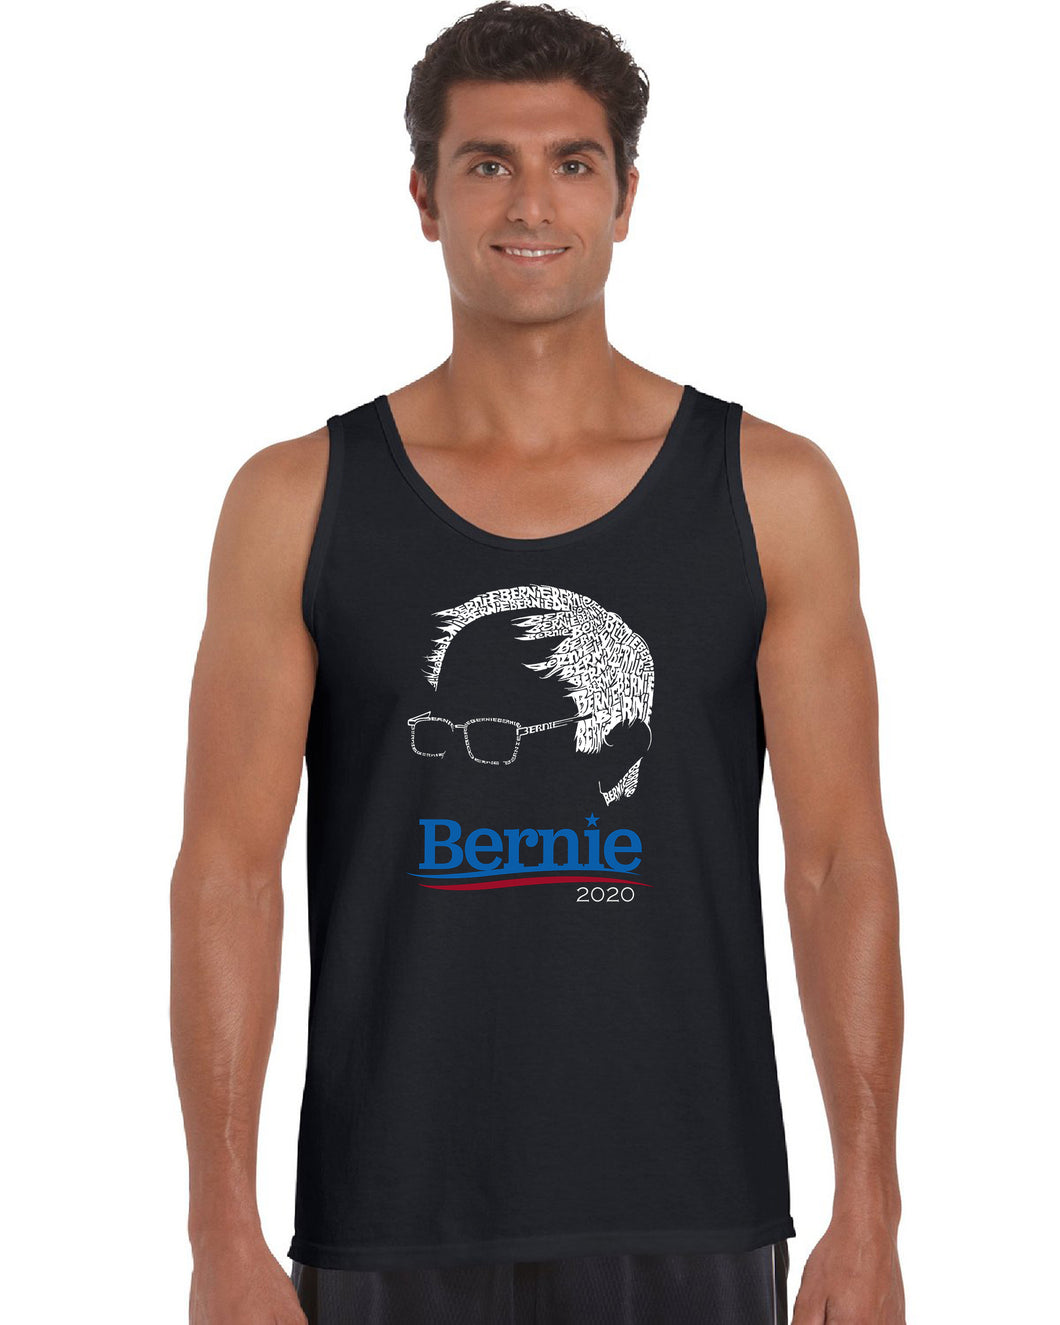 Bernie Sanders 2020 - Men's Word Art Tank Top